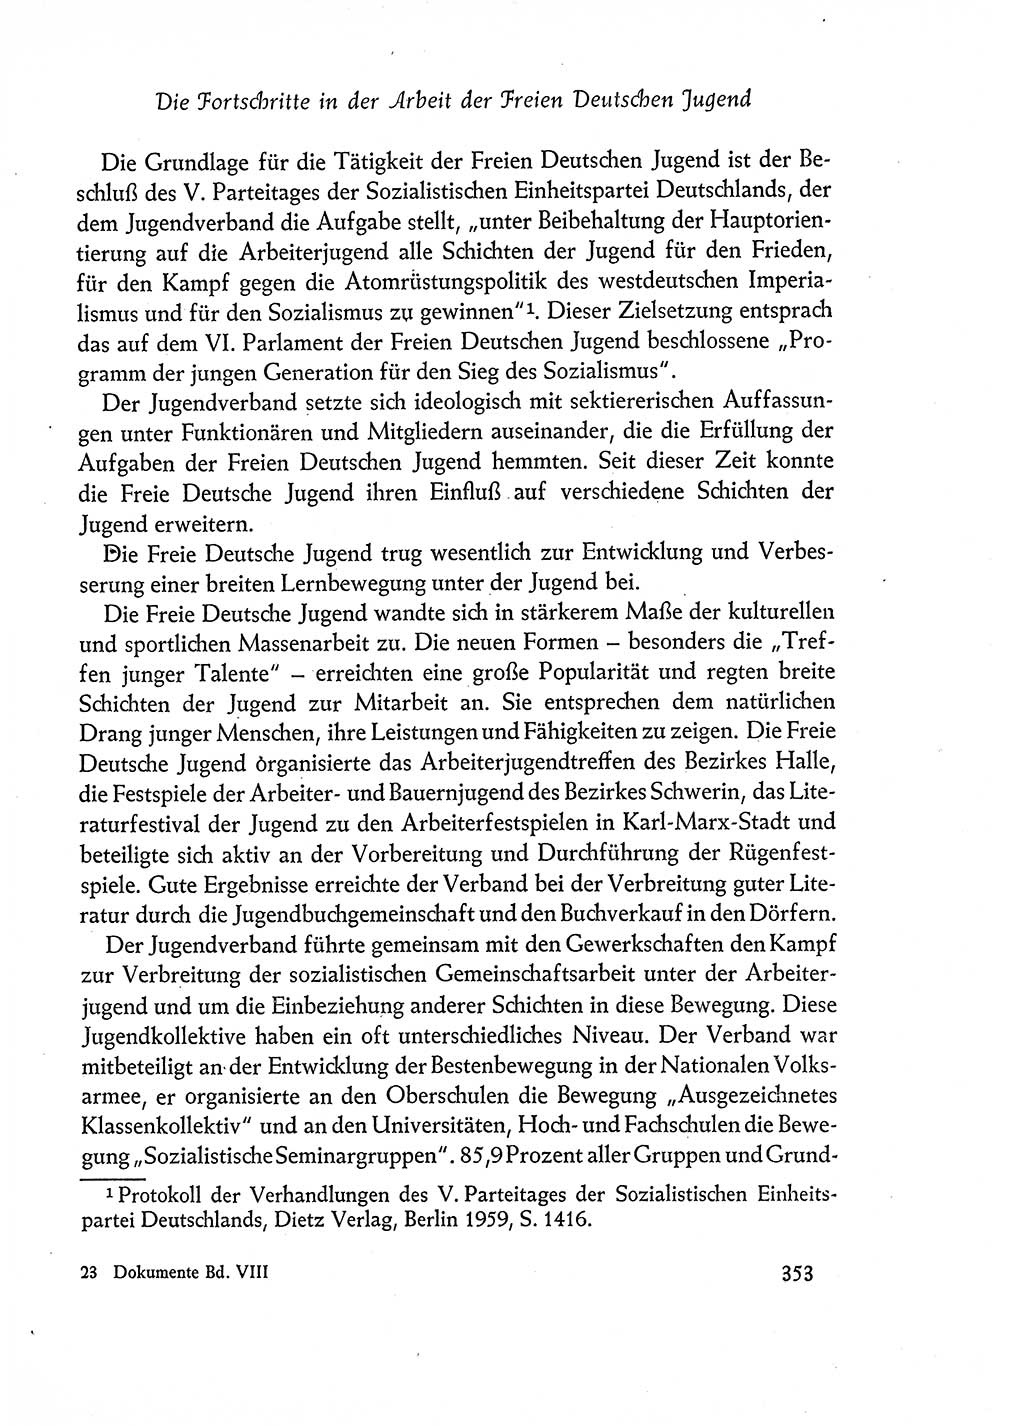 Dokumente der Sozialistischen Einheitspartei Deutschlands (SED) [Deutsche Demokratische Republik (DDR)] 1960-1961, Seite 353 (Dok. SED DDR 1960-1961, S. 353)